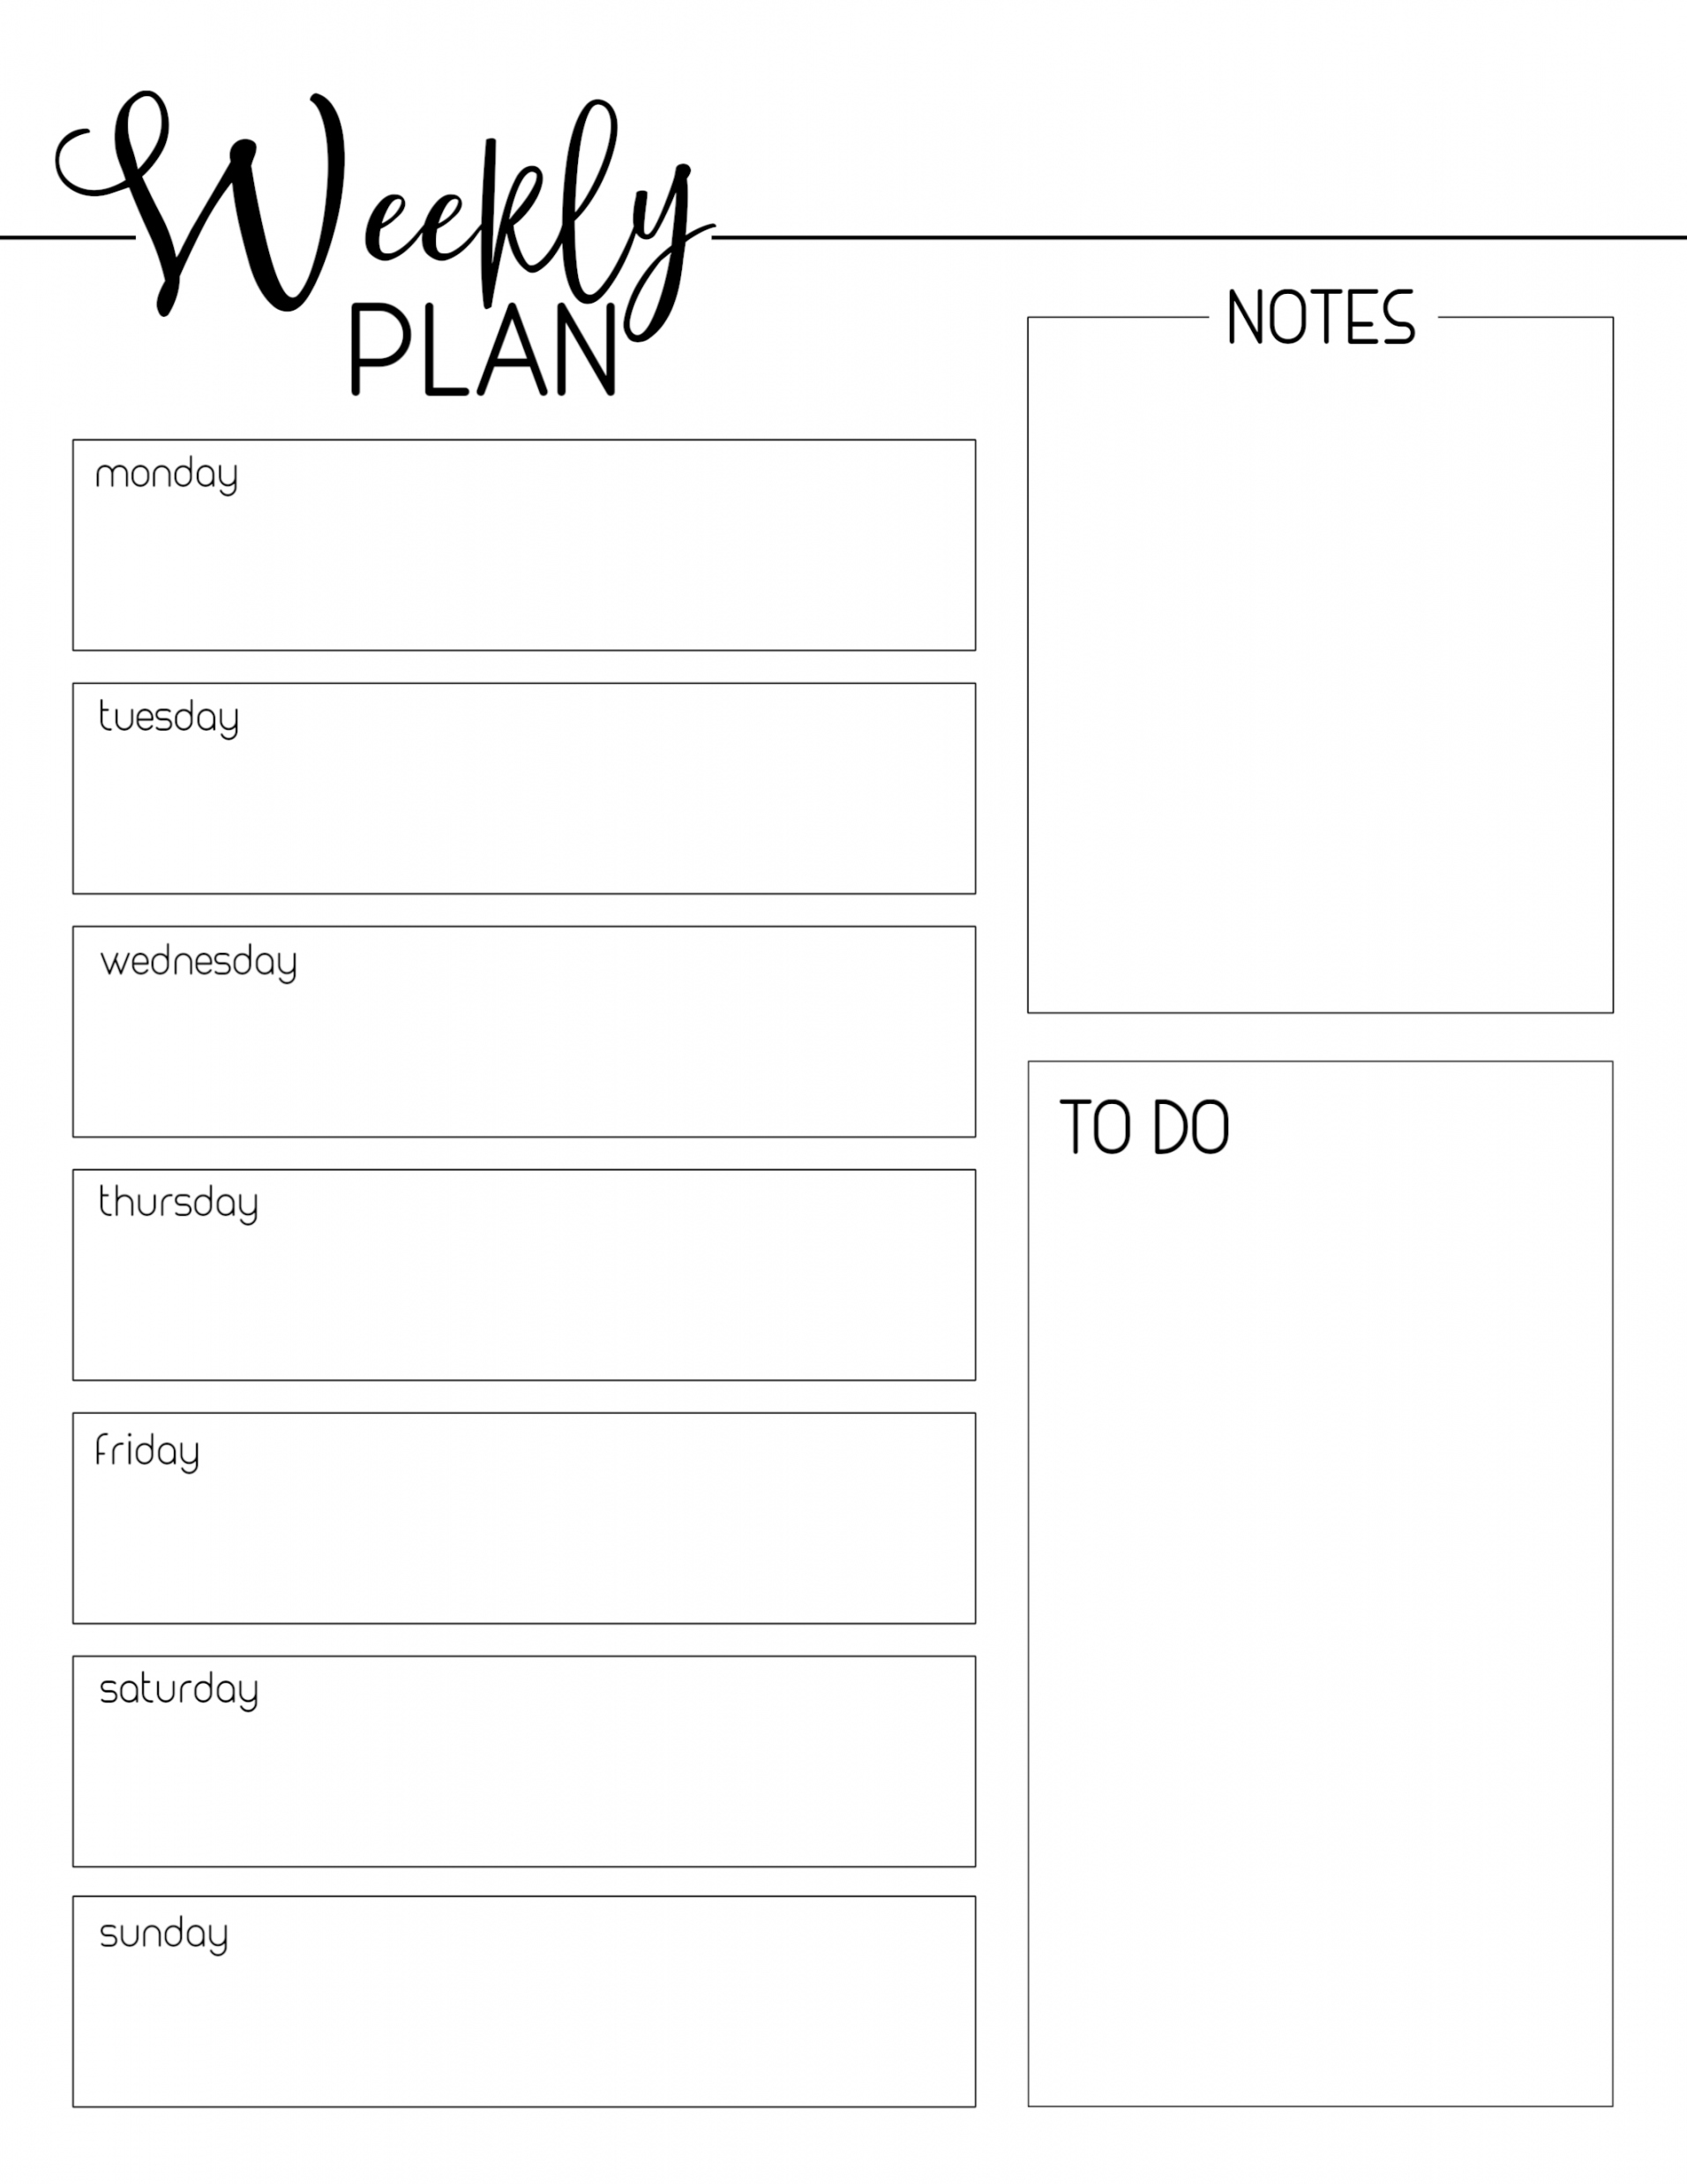 Free Printable Weekly Planner - Printable - Weekly Planner Template Free Printable - Paper Trail Design